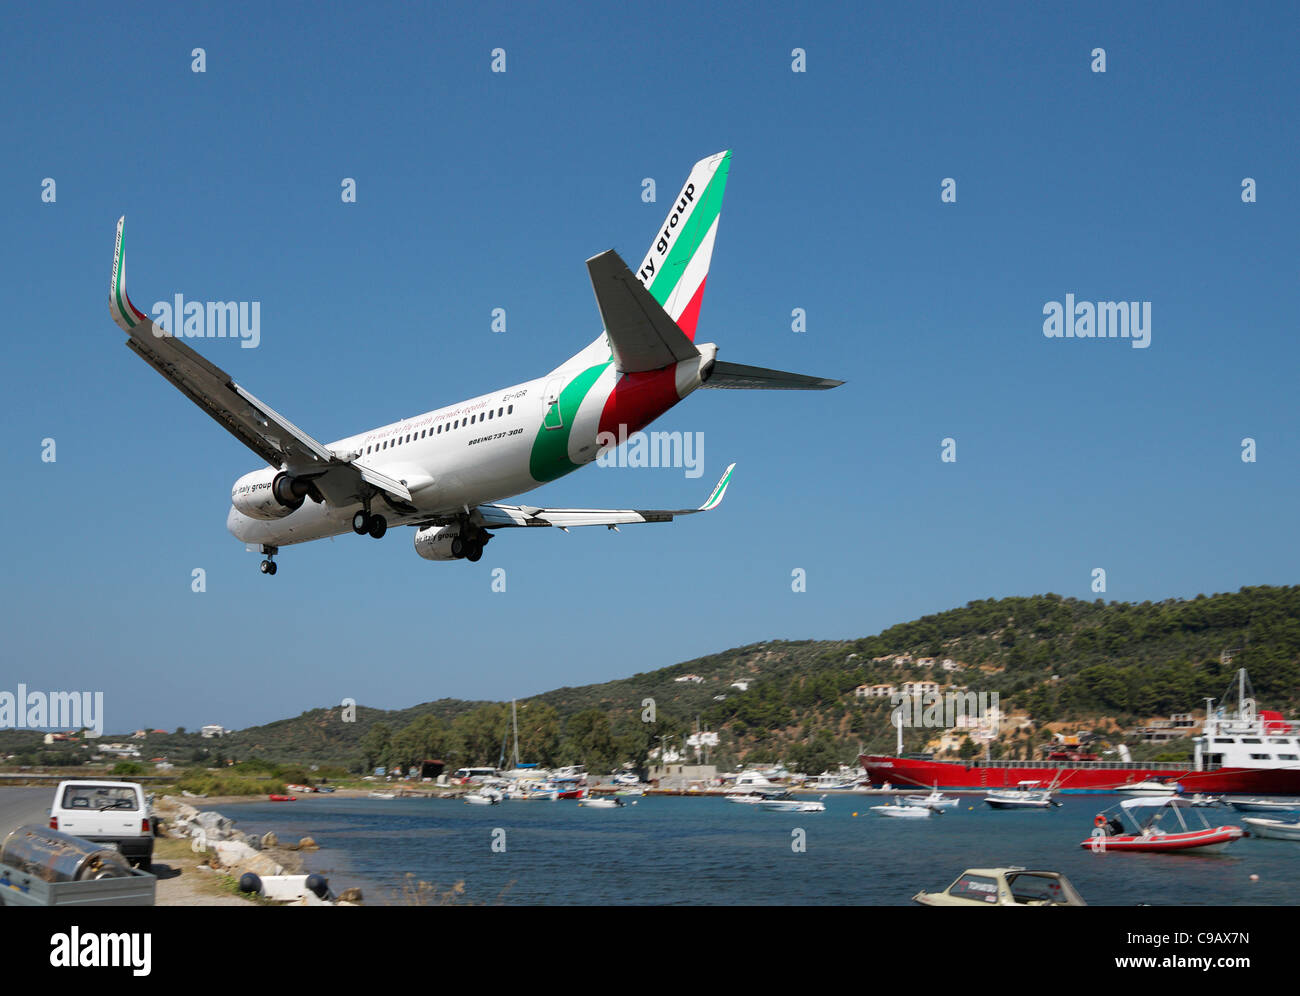 Aeroplane landing at Skiathos Town, Skiathos, Greece Stock Photo